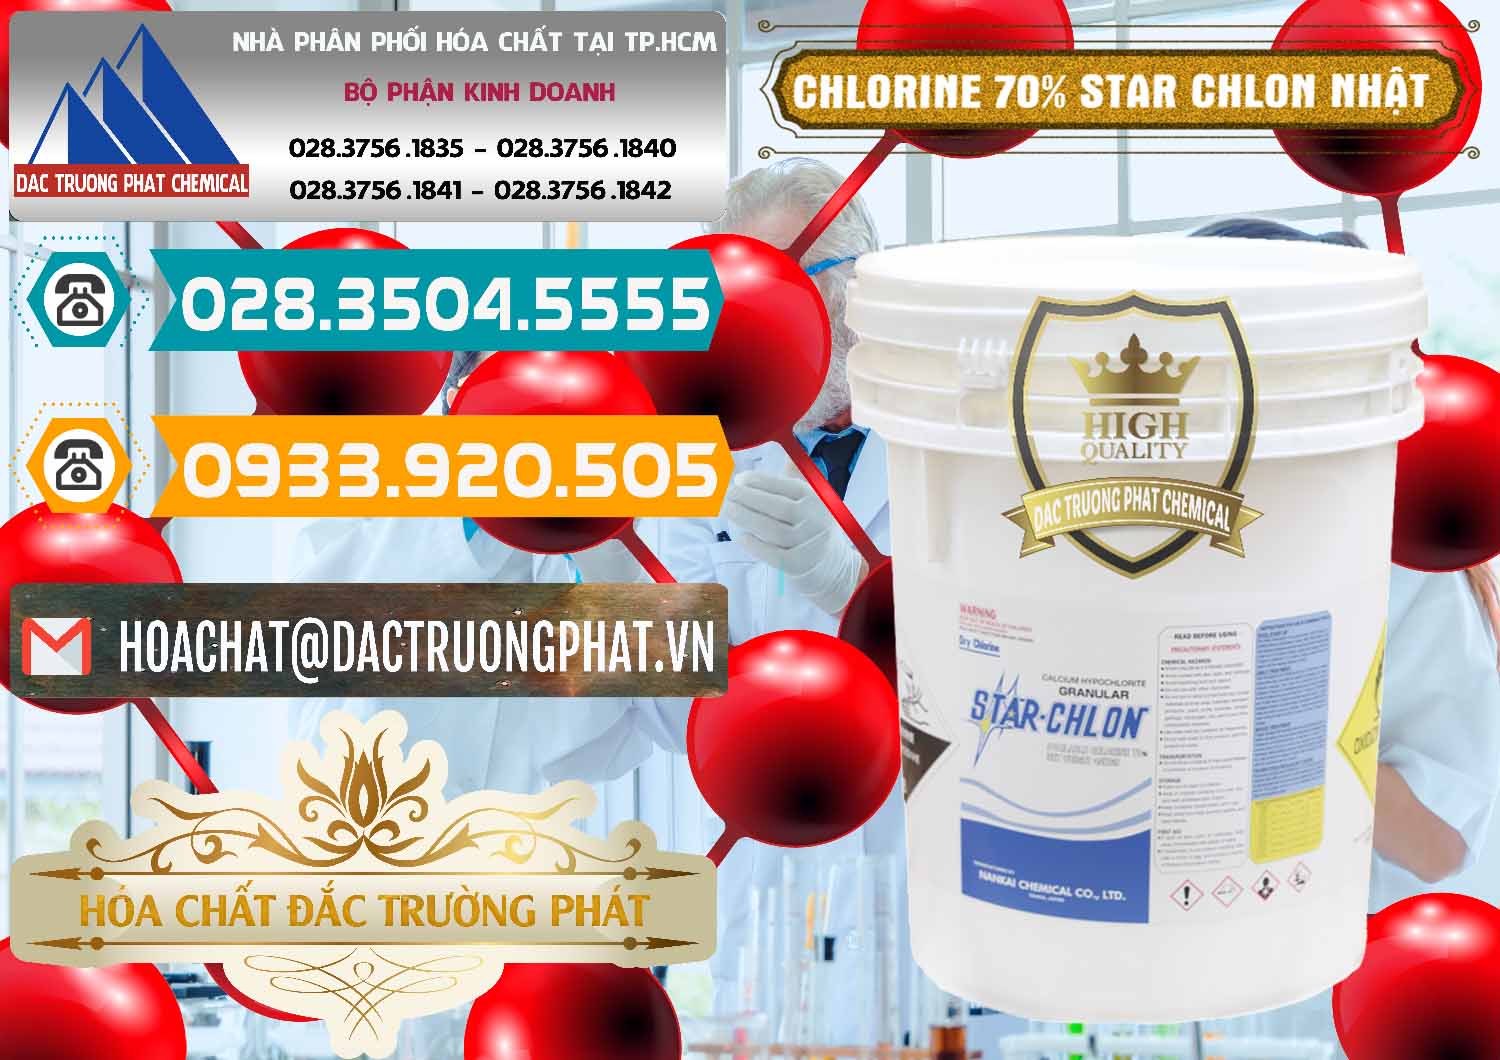 Cty kinh doanh và bán Clorin – Chlorine 70% Star Chlon Nhật Bản Japan - 0243 - Nơi chuyên bán và cung cấp hóa chất tại TP.HCM - congtyhoachat.vn